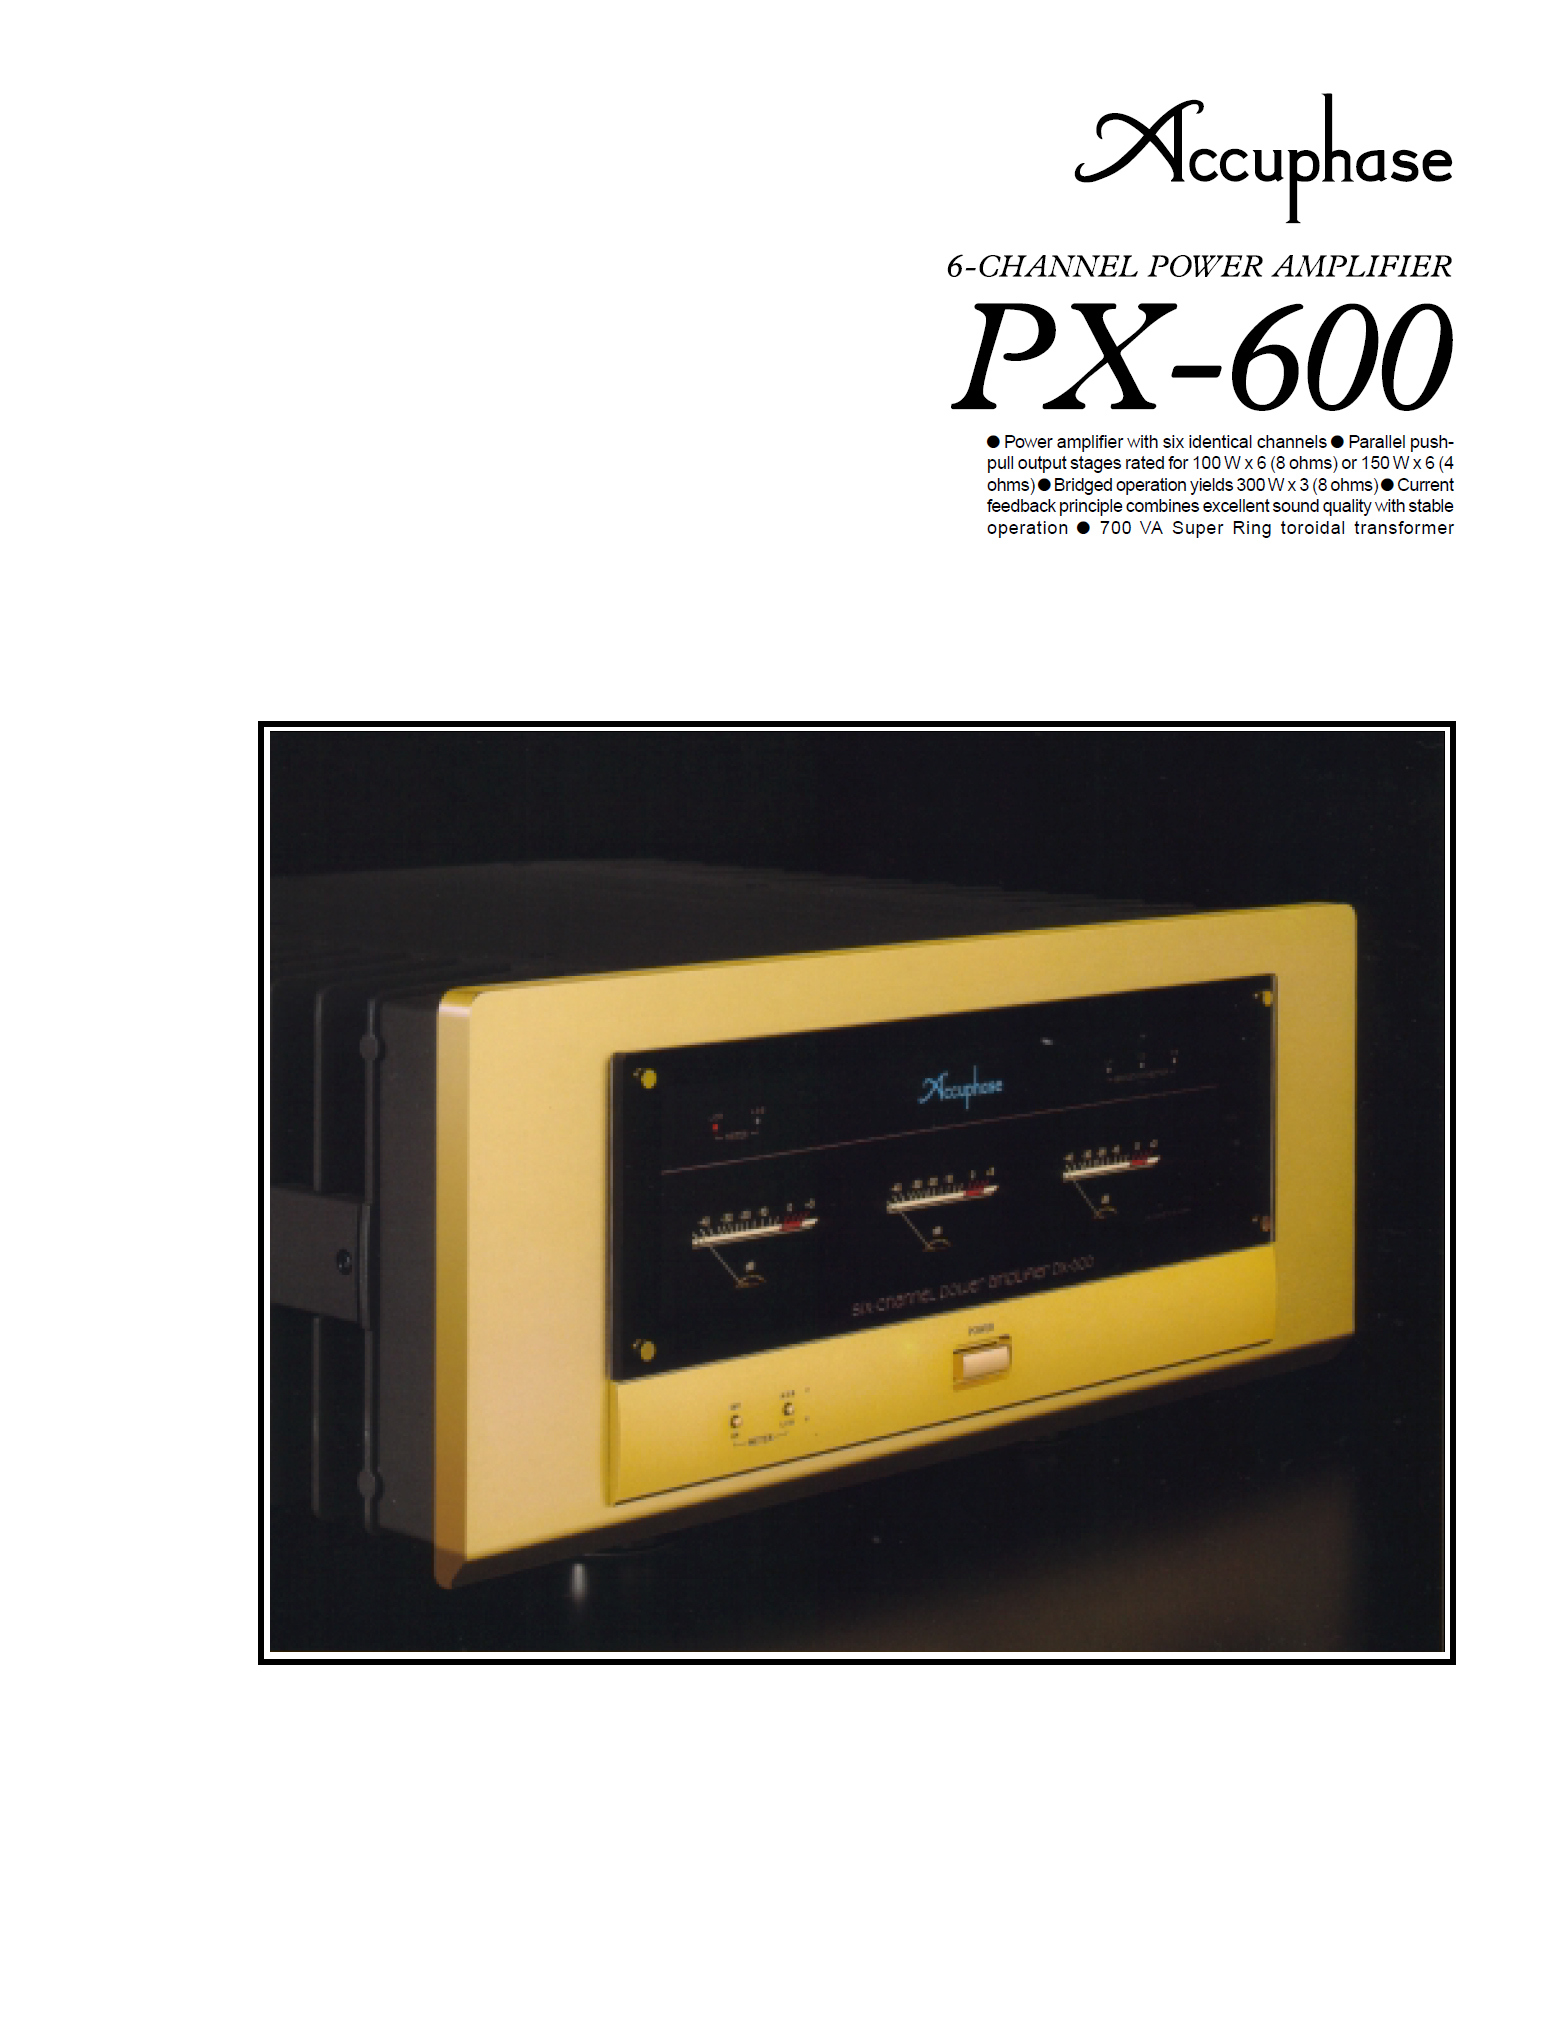 Accuphase PX-600-Prospekt-1.jpg